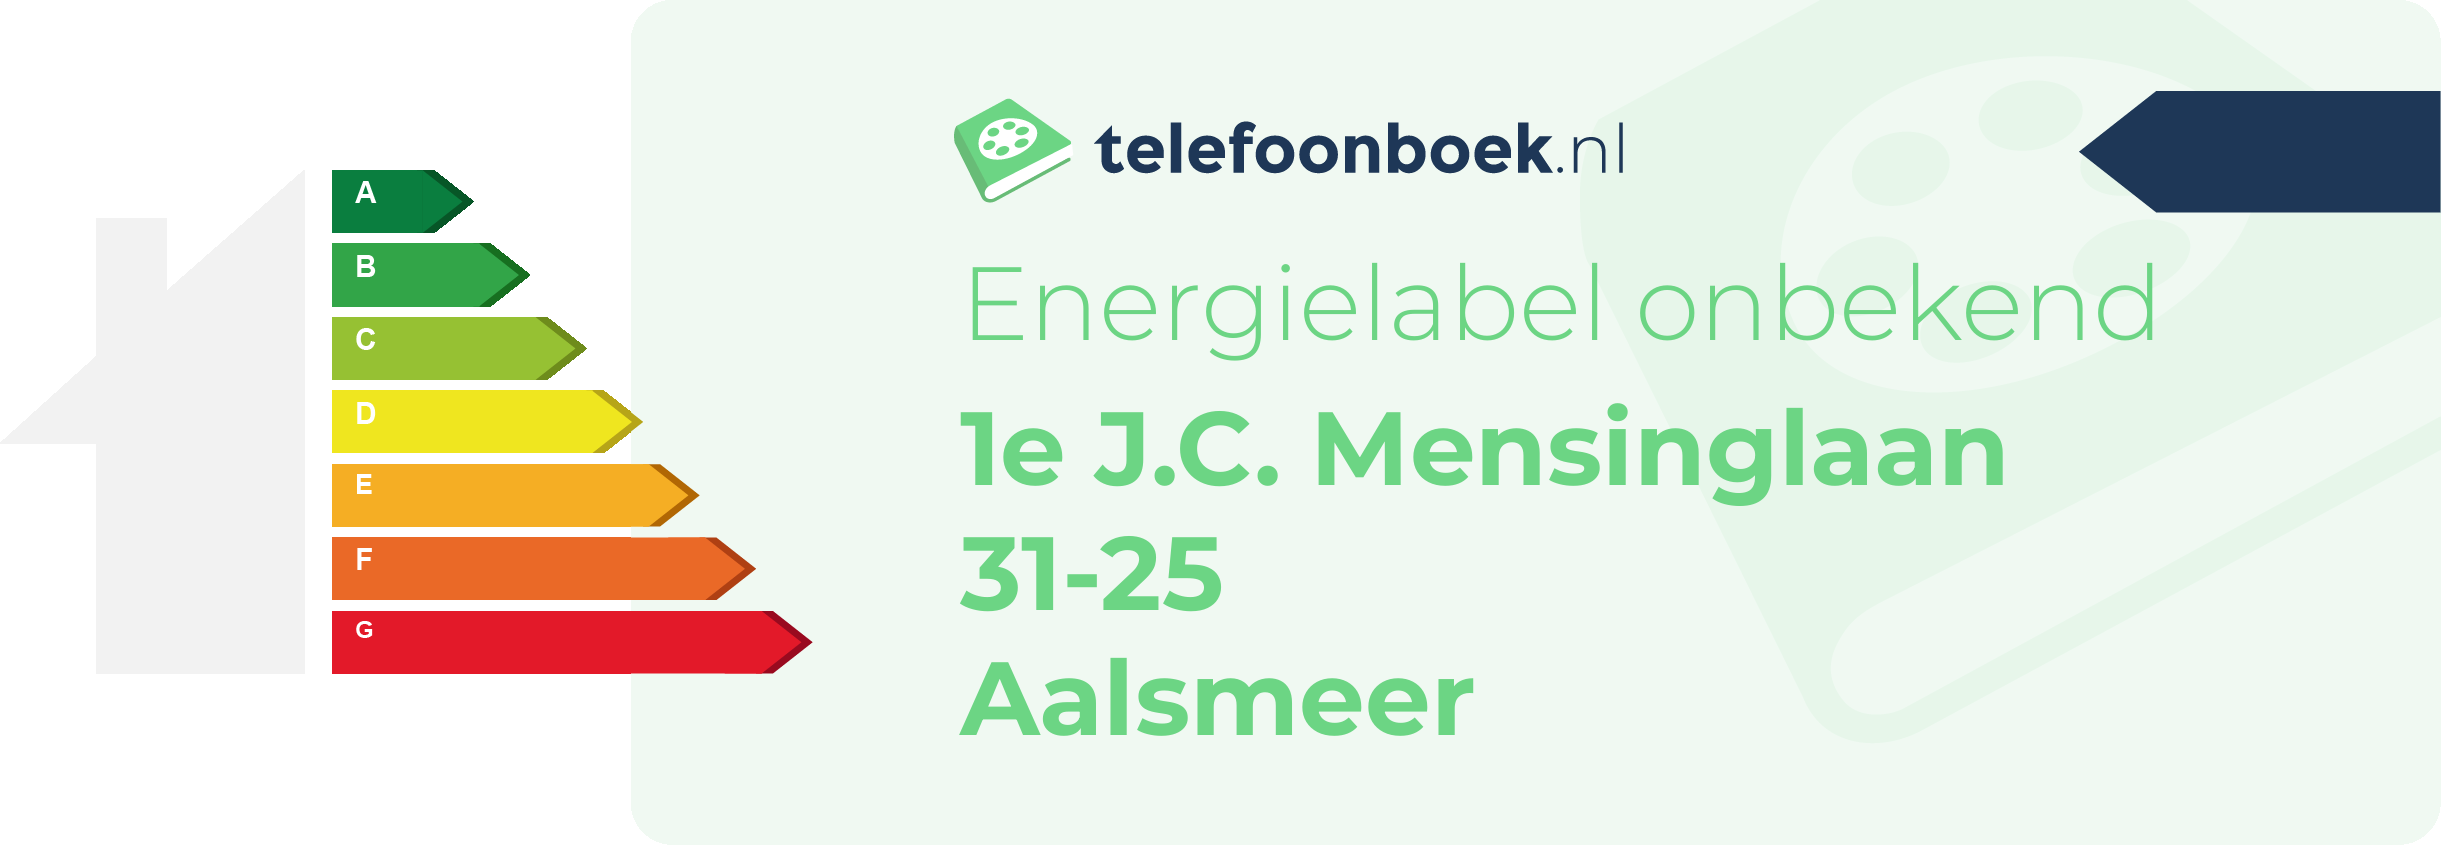 Energielabel 1e J.C. Mensinglaan 31-25 Aalsmeer